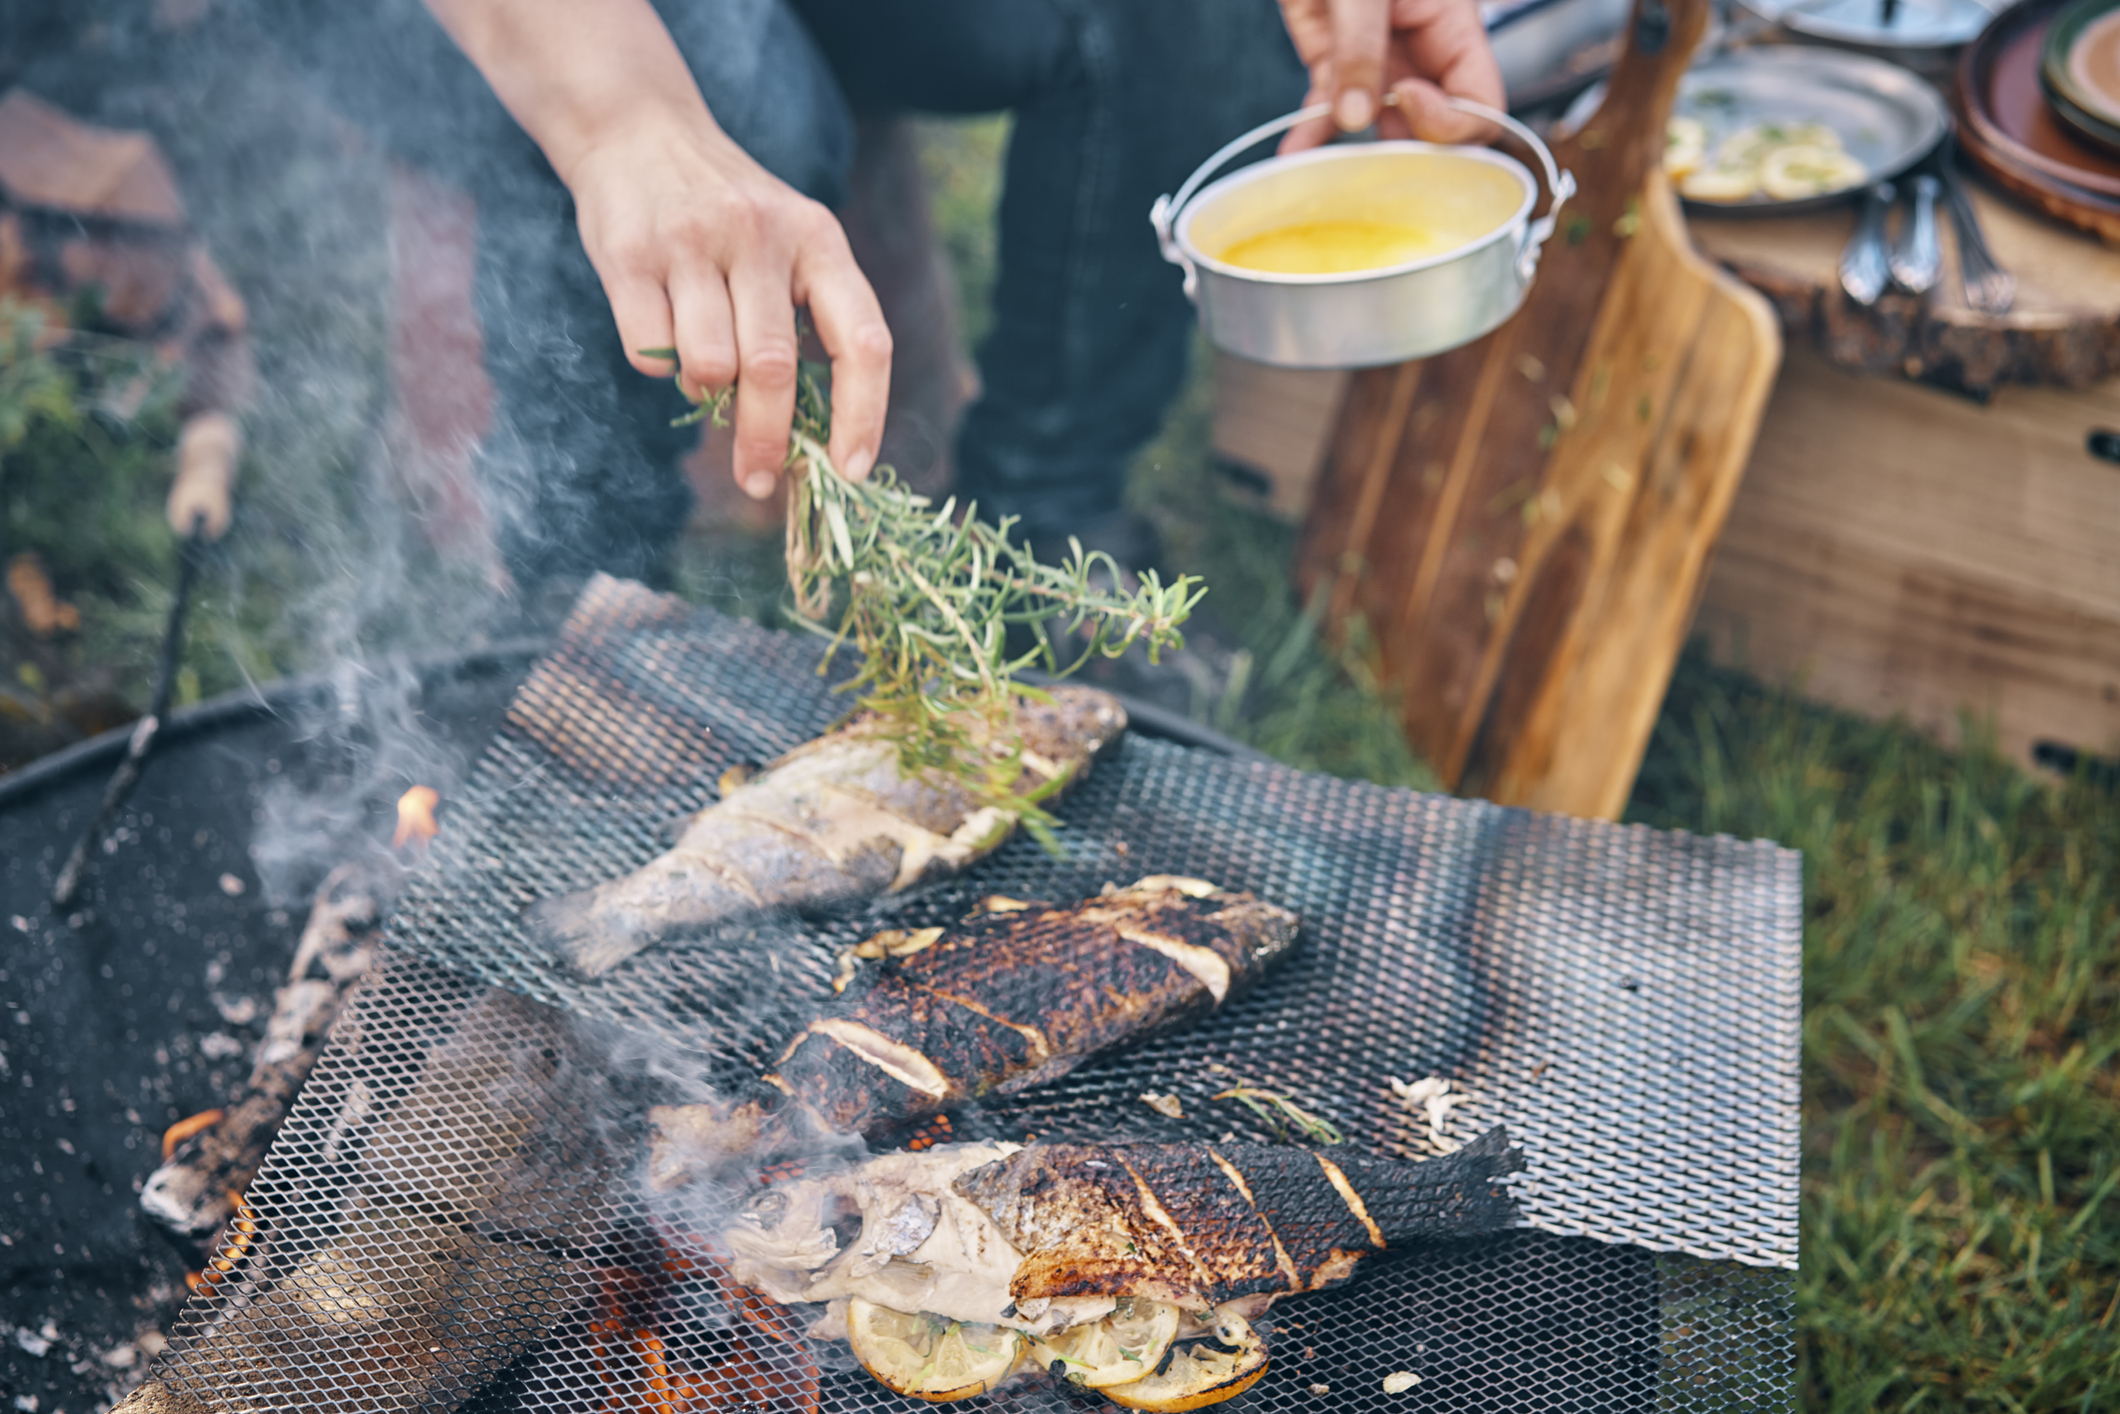 Nouveau - Le petit Chalumeau Fuego Cook -Spécial Cuisine & Fumage au  Barbecue